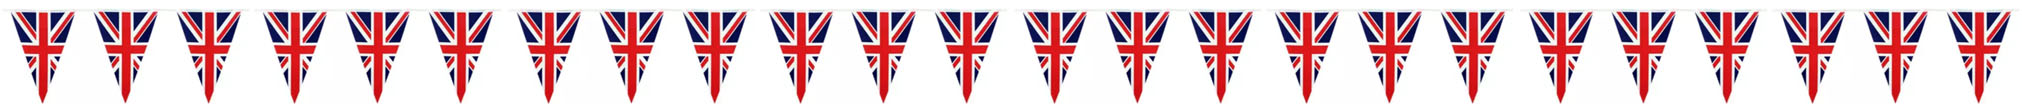 Engelse vlaggetjes